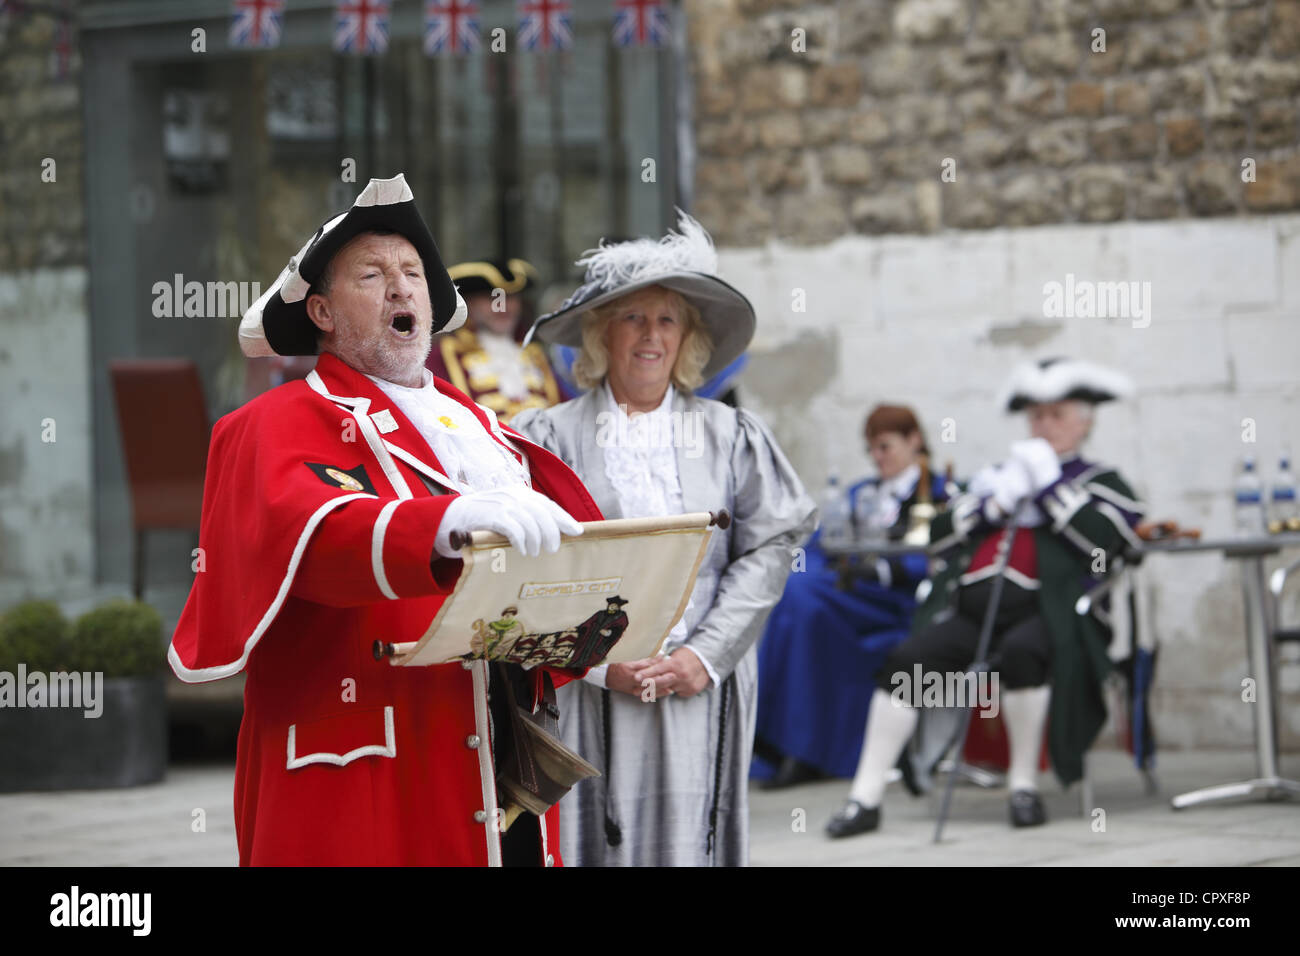 Stadt-Schreiern konkurrieren in einem Nationalwettbewerb der Stadtausrufer feiern Königin Elizabeth II Diamond Jubilee in Oxford Castle, Großbritannien Stockfoto